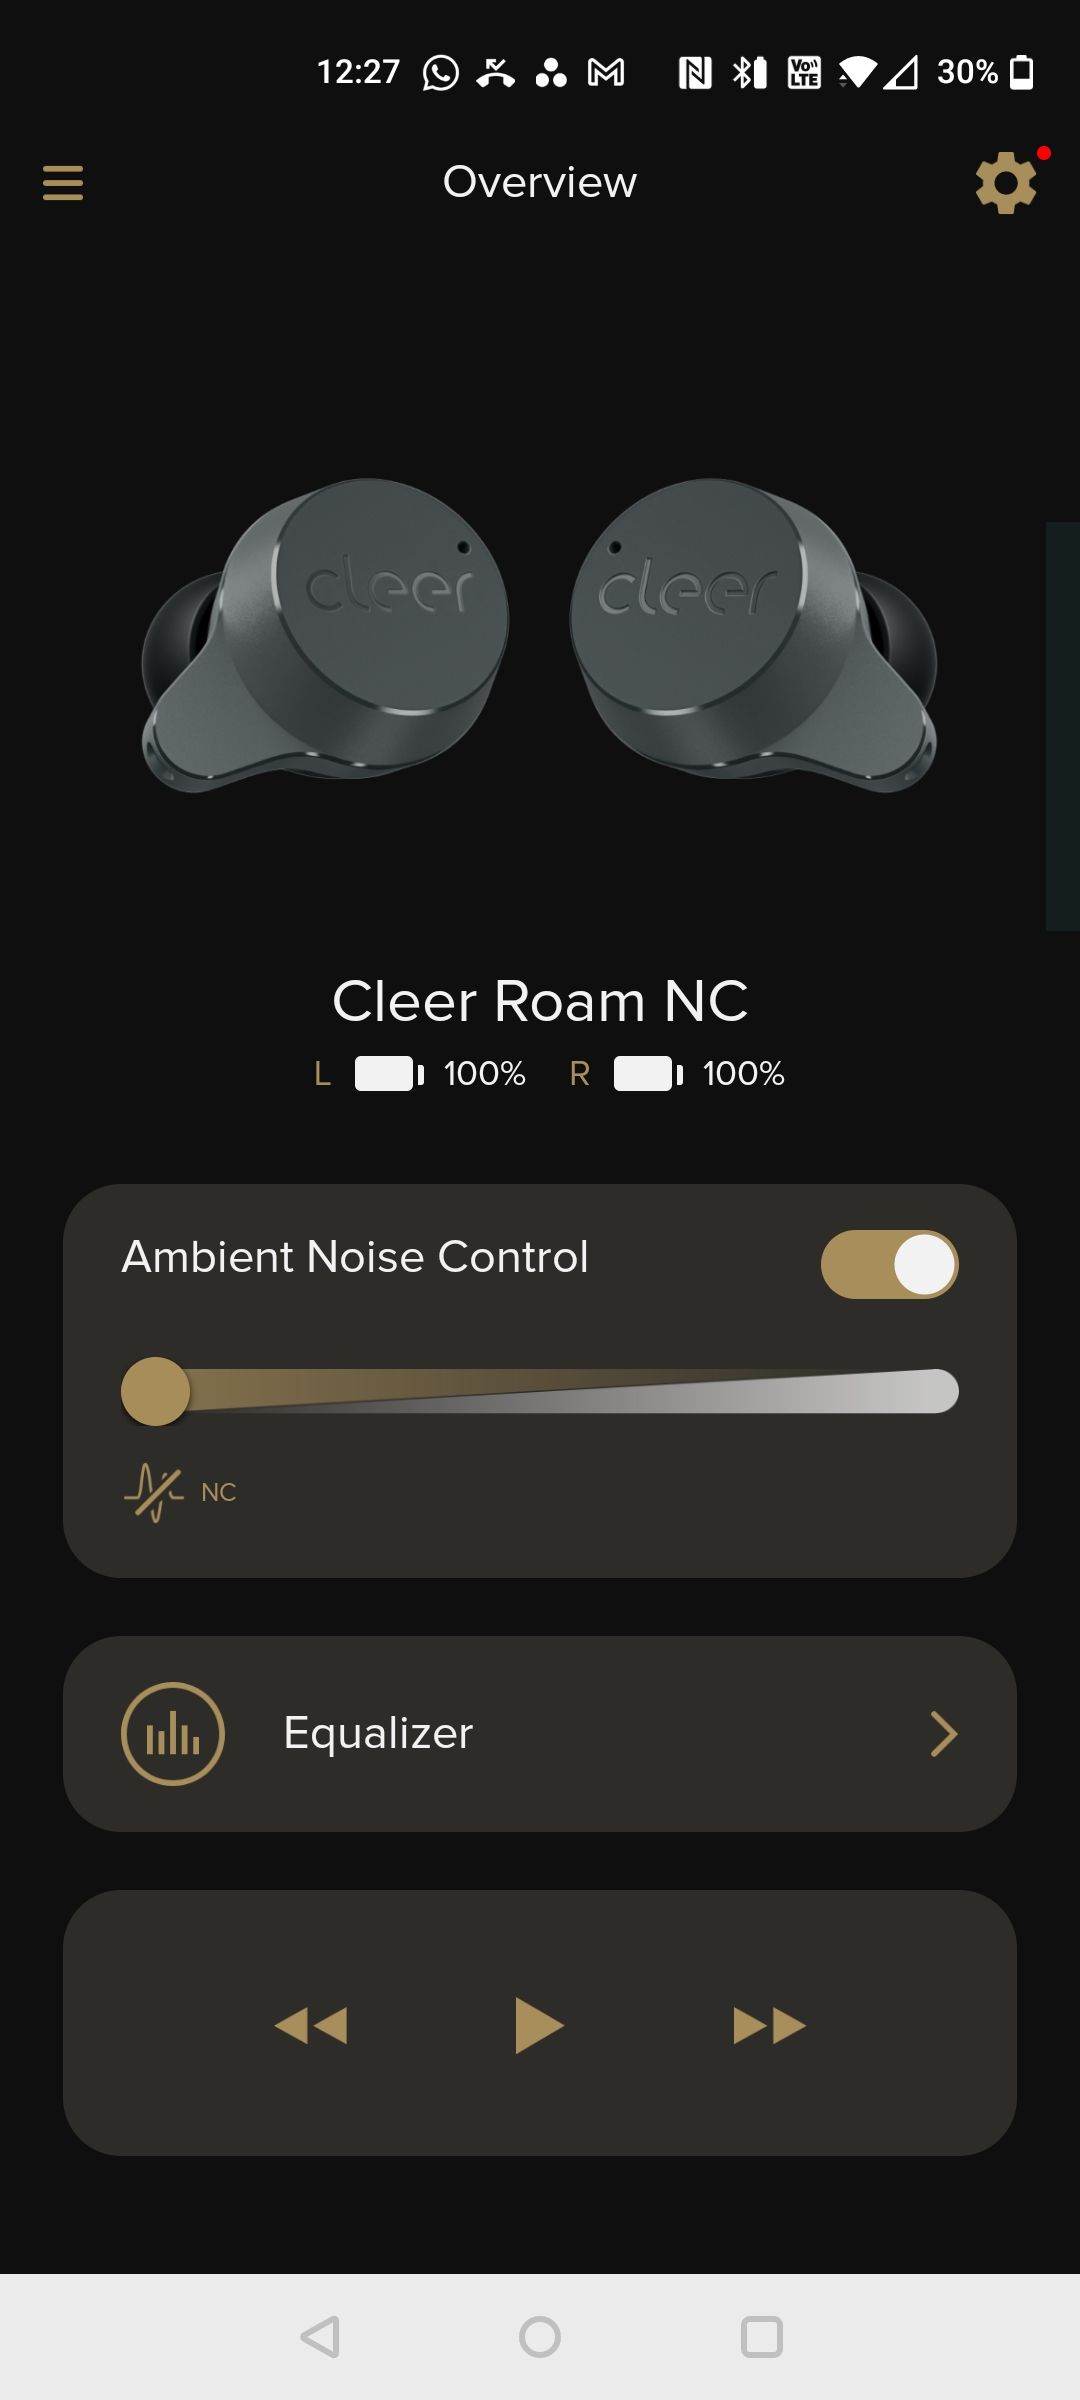 cleer roam nc cleer+ app connected